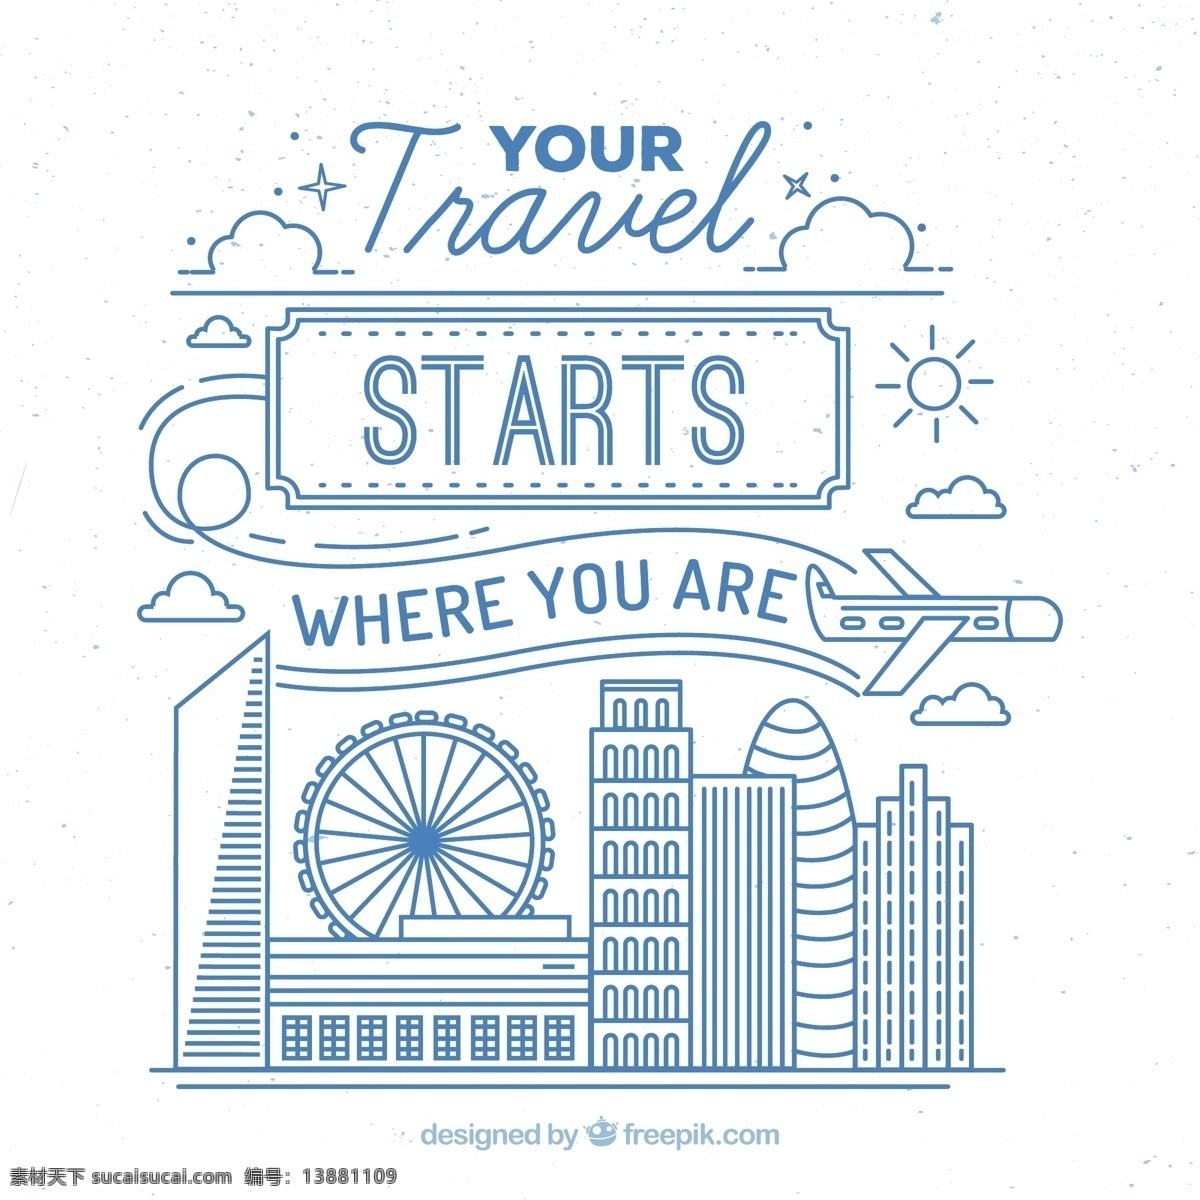 可爱 旅行 插图 蓝色 轮廓 旅游 世界 线条 飞机 车轮 报价 度假 假期 费里斯轮 纪念碑